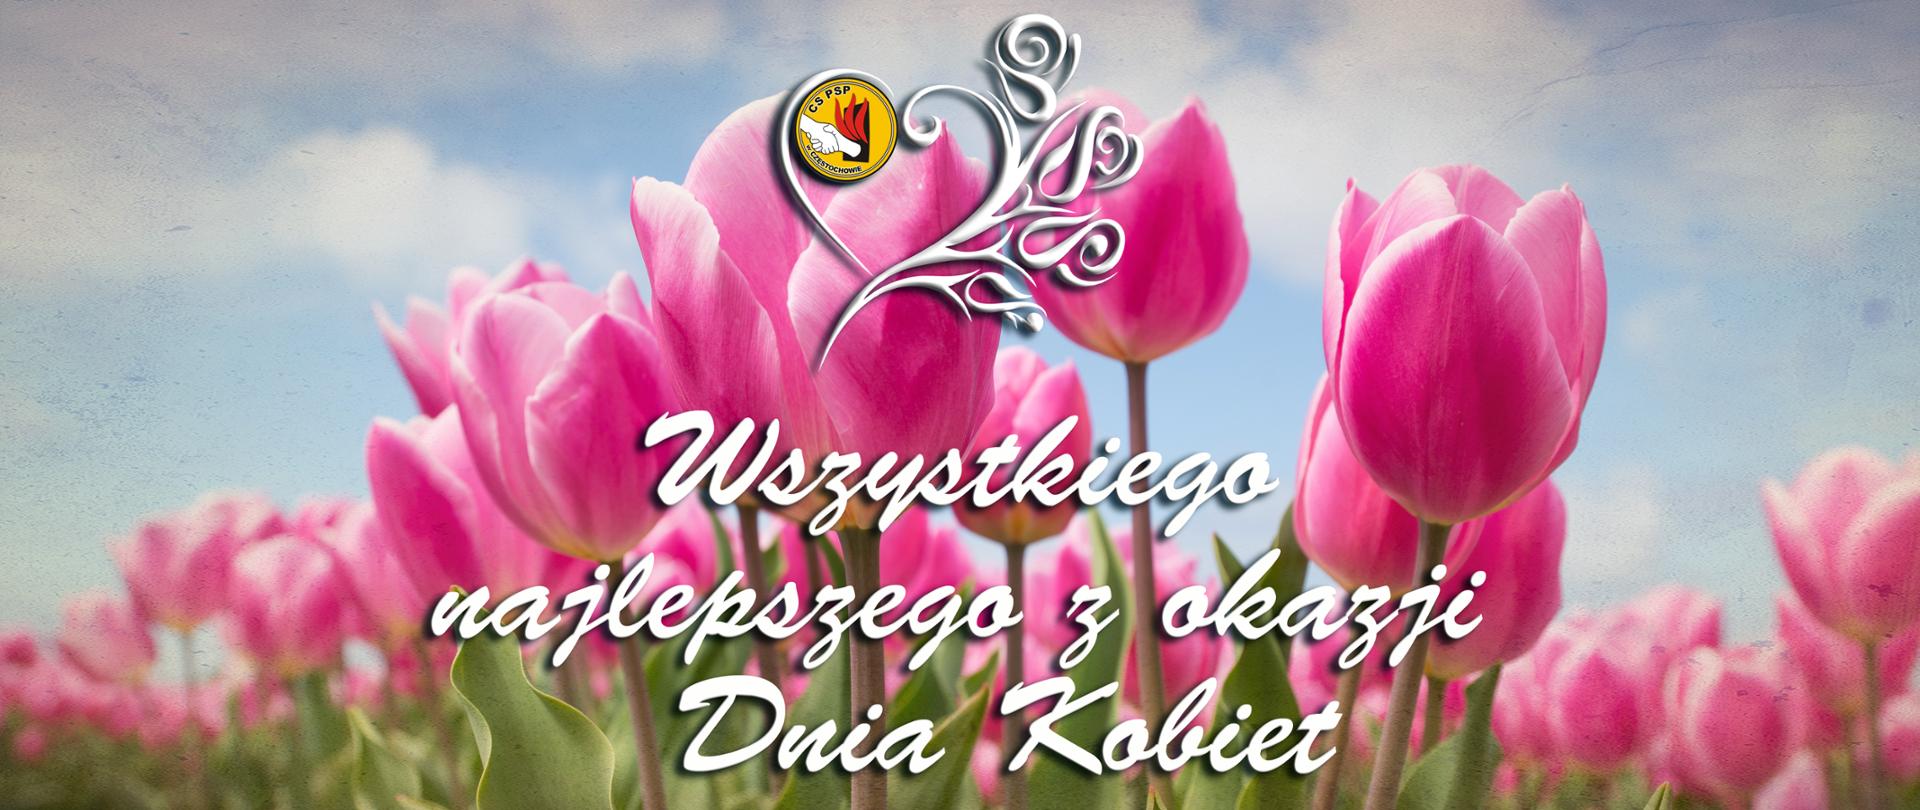 Okolicznościowa grafika na której widzimy tulipany na tle błękitu nieba, u góry na środku logo Centralnej Szkoły PSP otoczone ozdobnym wzorem, poniżej napis Wszystkiego najlepszego z okazji Dnia Kobiet